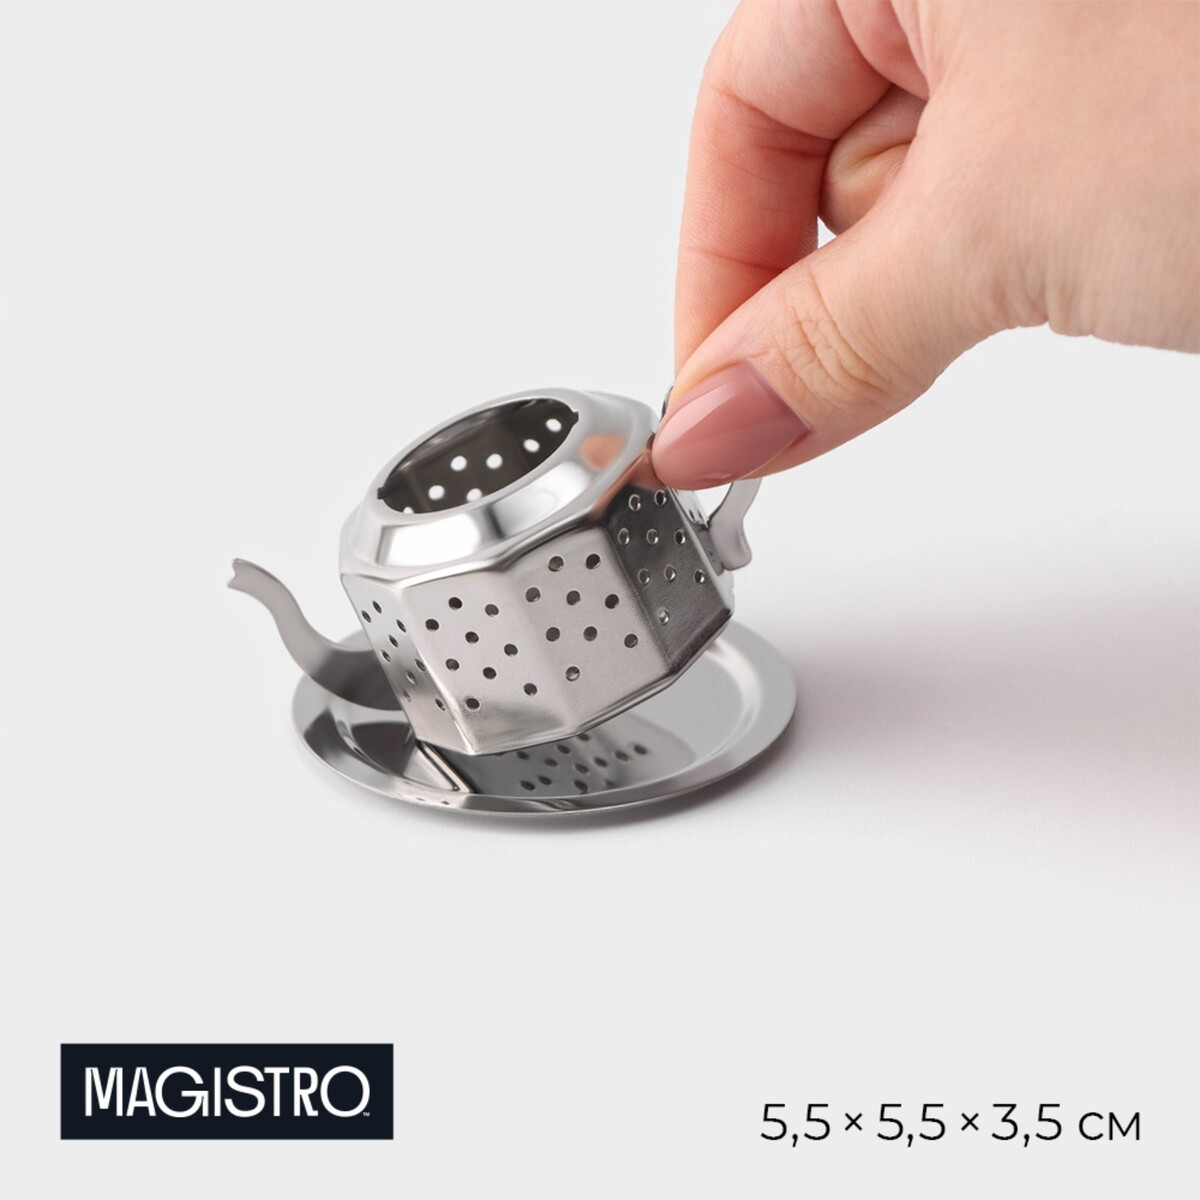 Сито для чая magistro